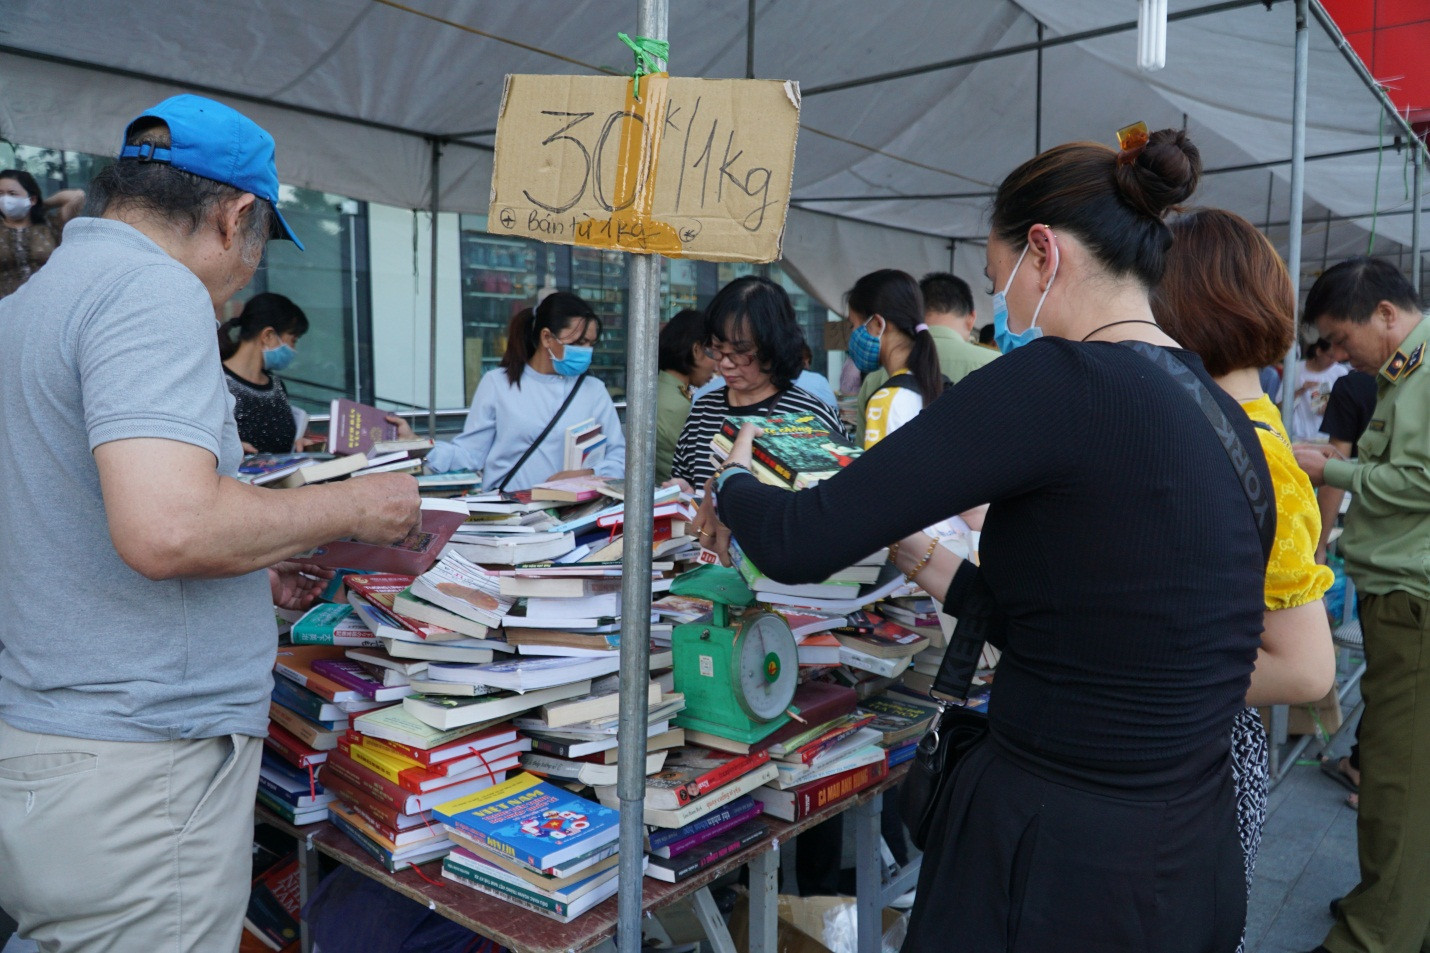 Thu giữ hàng loạt sách giả tại Hội chợ sách ở Hà Nội - 3